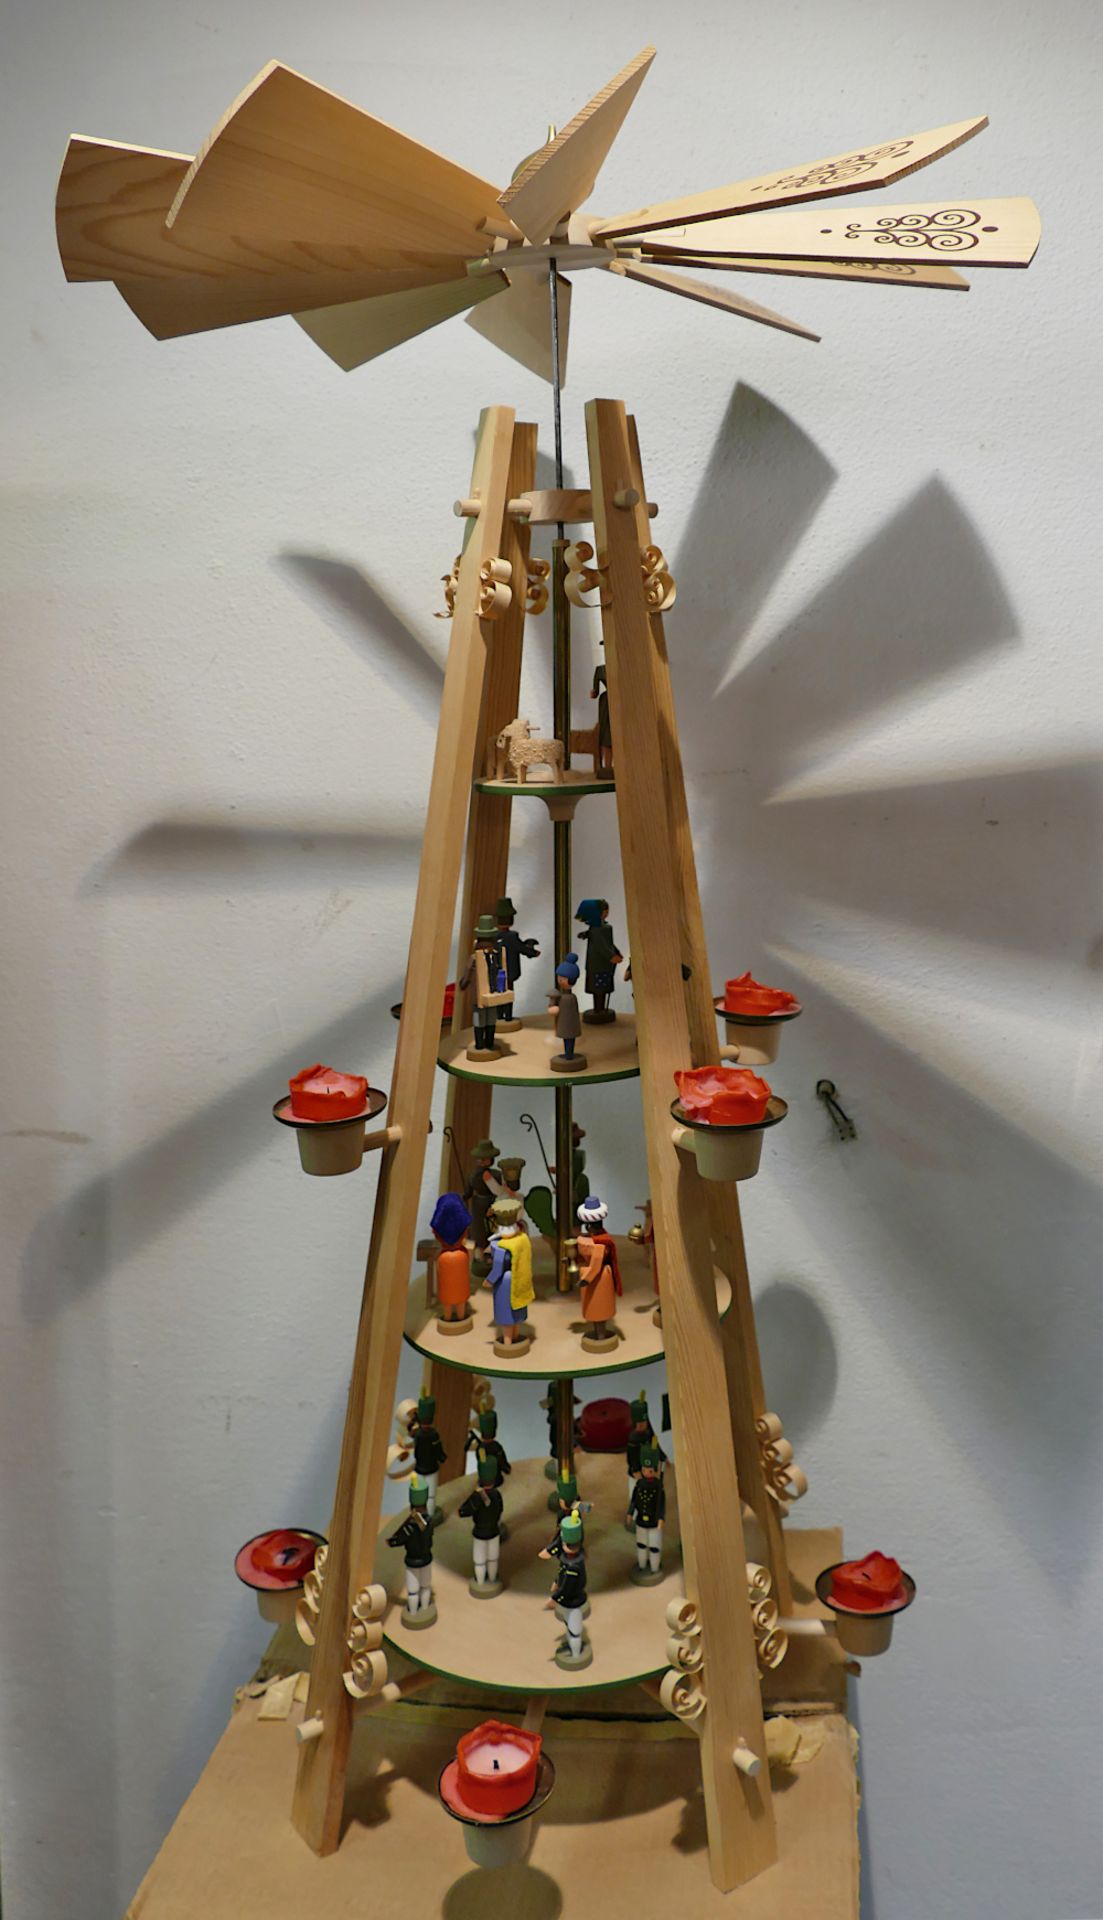 1 Erzgebirgische Weihnachtspyramide VERO 4-stöckig für 8 Kerzen, ca. H 100cm, mit Originalkartonage